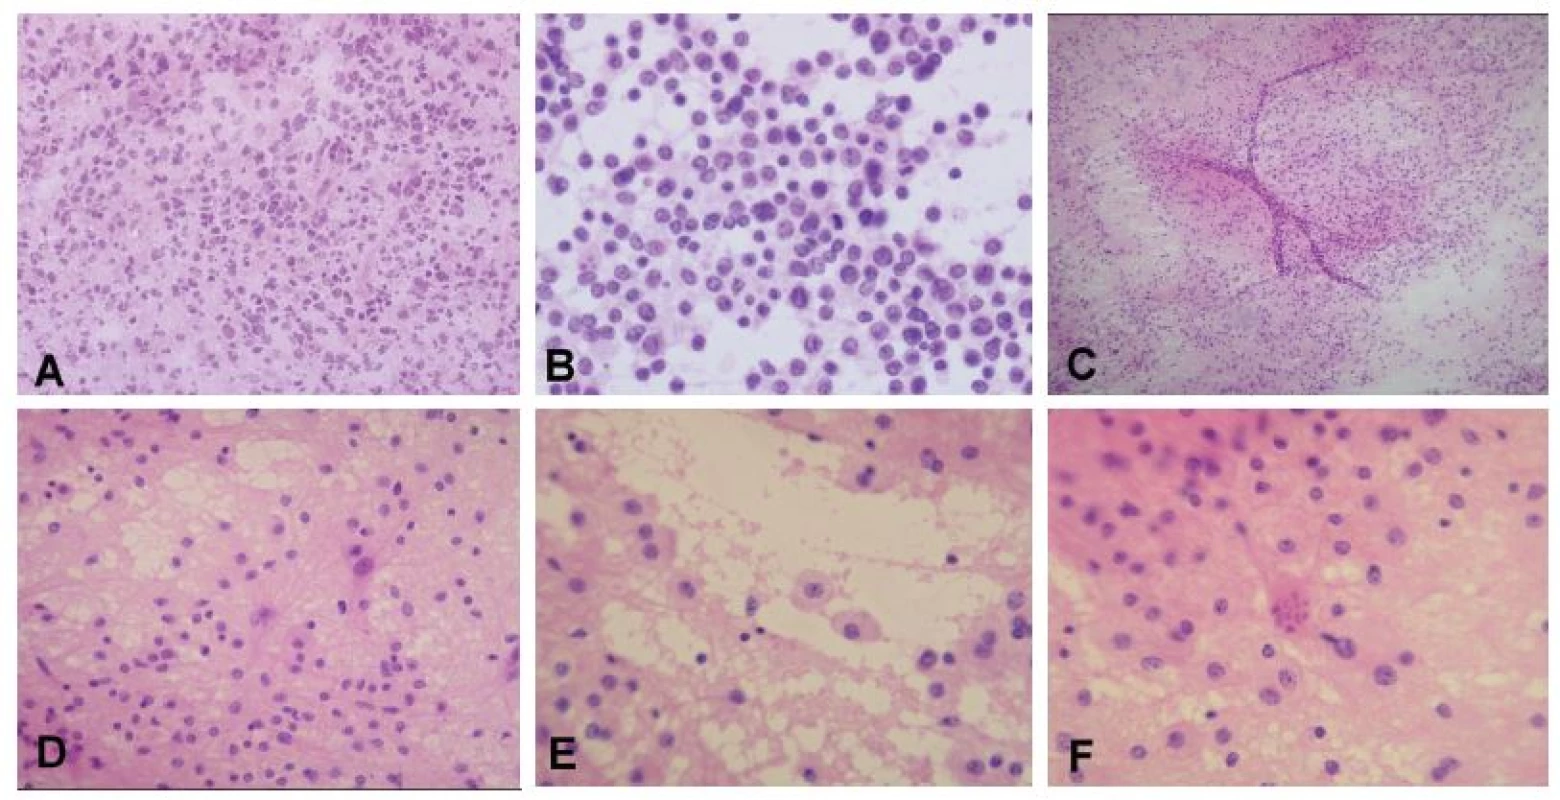 (A, B) Periventrikulárny tumor u 75-ročnej ženy. V zmrazenom reze jasná nádorová infiltrácia, typ nádoru však nemožno spoľahlivo stanoviť (A). V náterovej
cytológii bola zachytená diskohezívna lymfoidná populácia buniek, niektoré iba s nahými jadrami, iné s tenkým lemom cytoplazmy. Na pozadí početné
tzv. lymfoglandulárne telieska - fragmenty cytoplazmy po rozpade buniek. Jadrá majú vzhľad prevažne centrocytrov (B). Peroperačná diagnóza: high-grade
lymfóm. Definitívna diagnóza: difúzny veľkobunkový B-lymfóm (DLBCL). (C-F) Supratentoriálne ložisko u 21-ročnej ženy. Náter bol na prvý pohľad celulárny
a pôsobil „nádorovo“ (C). Pri bližšom pohľade ale bolo jasné, že sa jedná o heterogénnu populáciu buniek, ktorá je tvorená reaktívnymi astrocytmi s jemnými
pravidelnými dlhými výbežkami, malými lymfocytmi a makrofágmi s objemnou svetlou jemne granulárnou cytolplazmou (D, E). V ložiskách demyelinizácie (ale
aj iných procesoch s reaktívnou astrocytózou) sa často vyskytujú neobvyklé astrocyty s fragmentovaným jadrom – tzv. Creutzfeldtove bunky (F). Peroperačná
diagnóza: akútna zápalová demyelinizácia, jednoznačný nádor nie je prítomný. Definitívna diagnóza: ložisko aktívnej demyelinizácie sugestívne pre diagnózu
sclerosis multiplex.